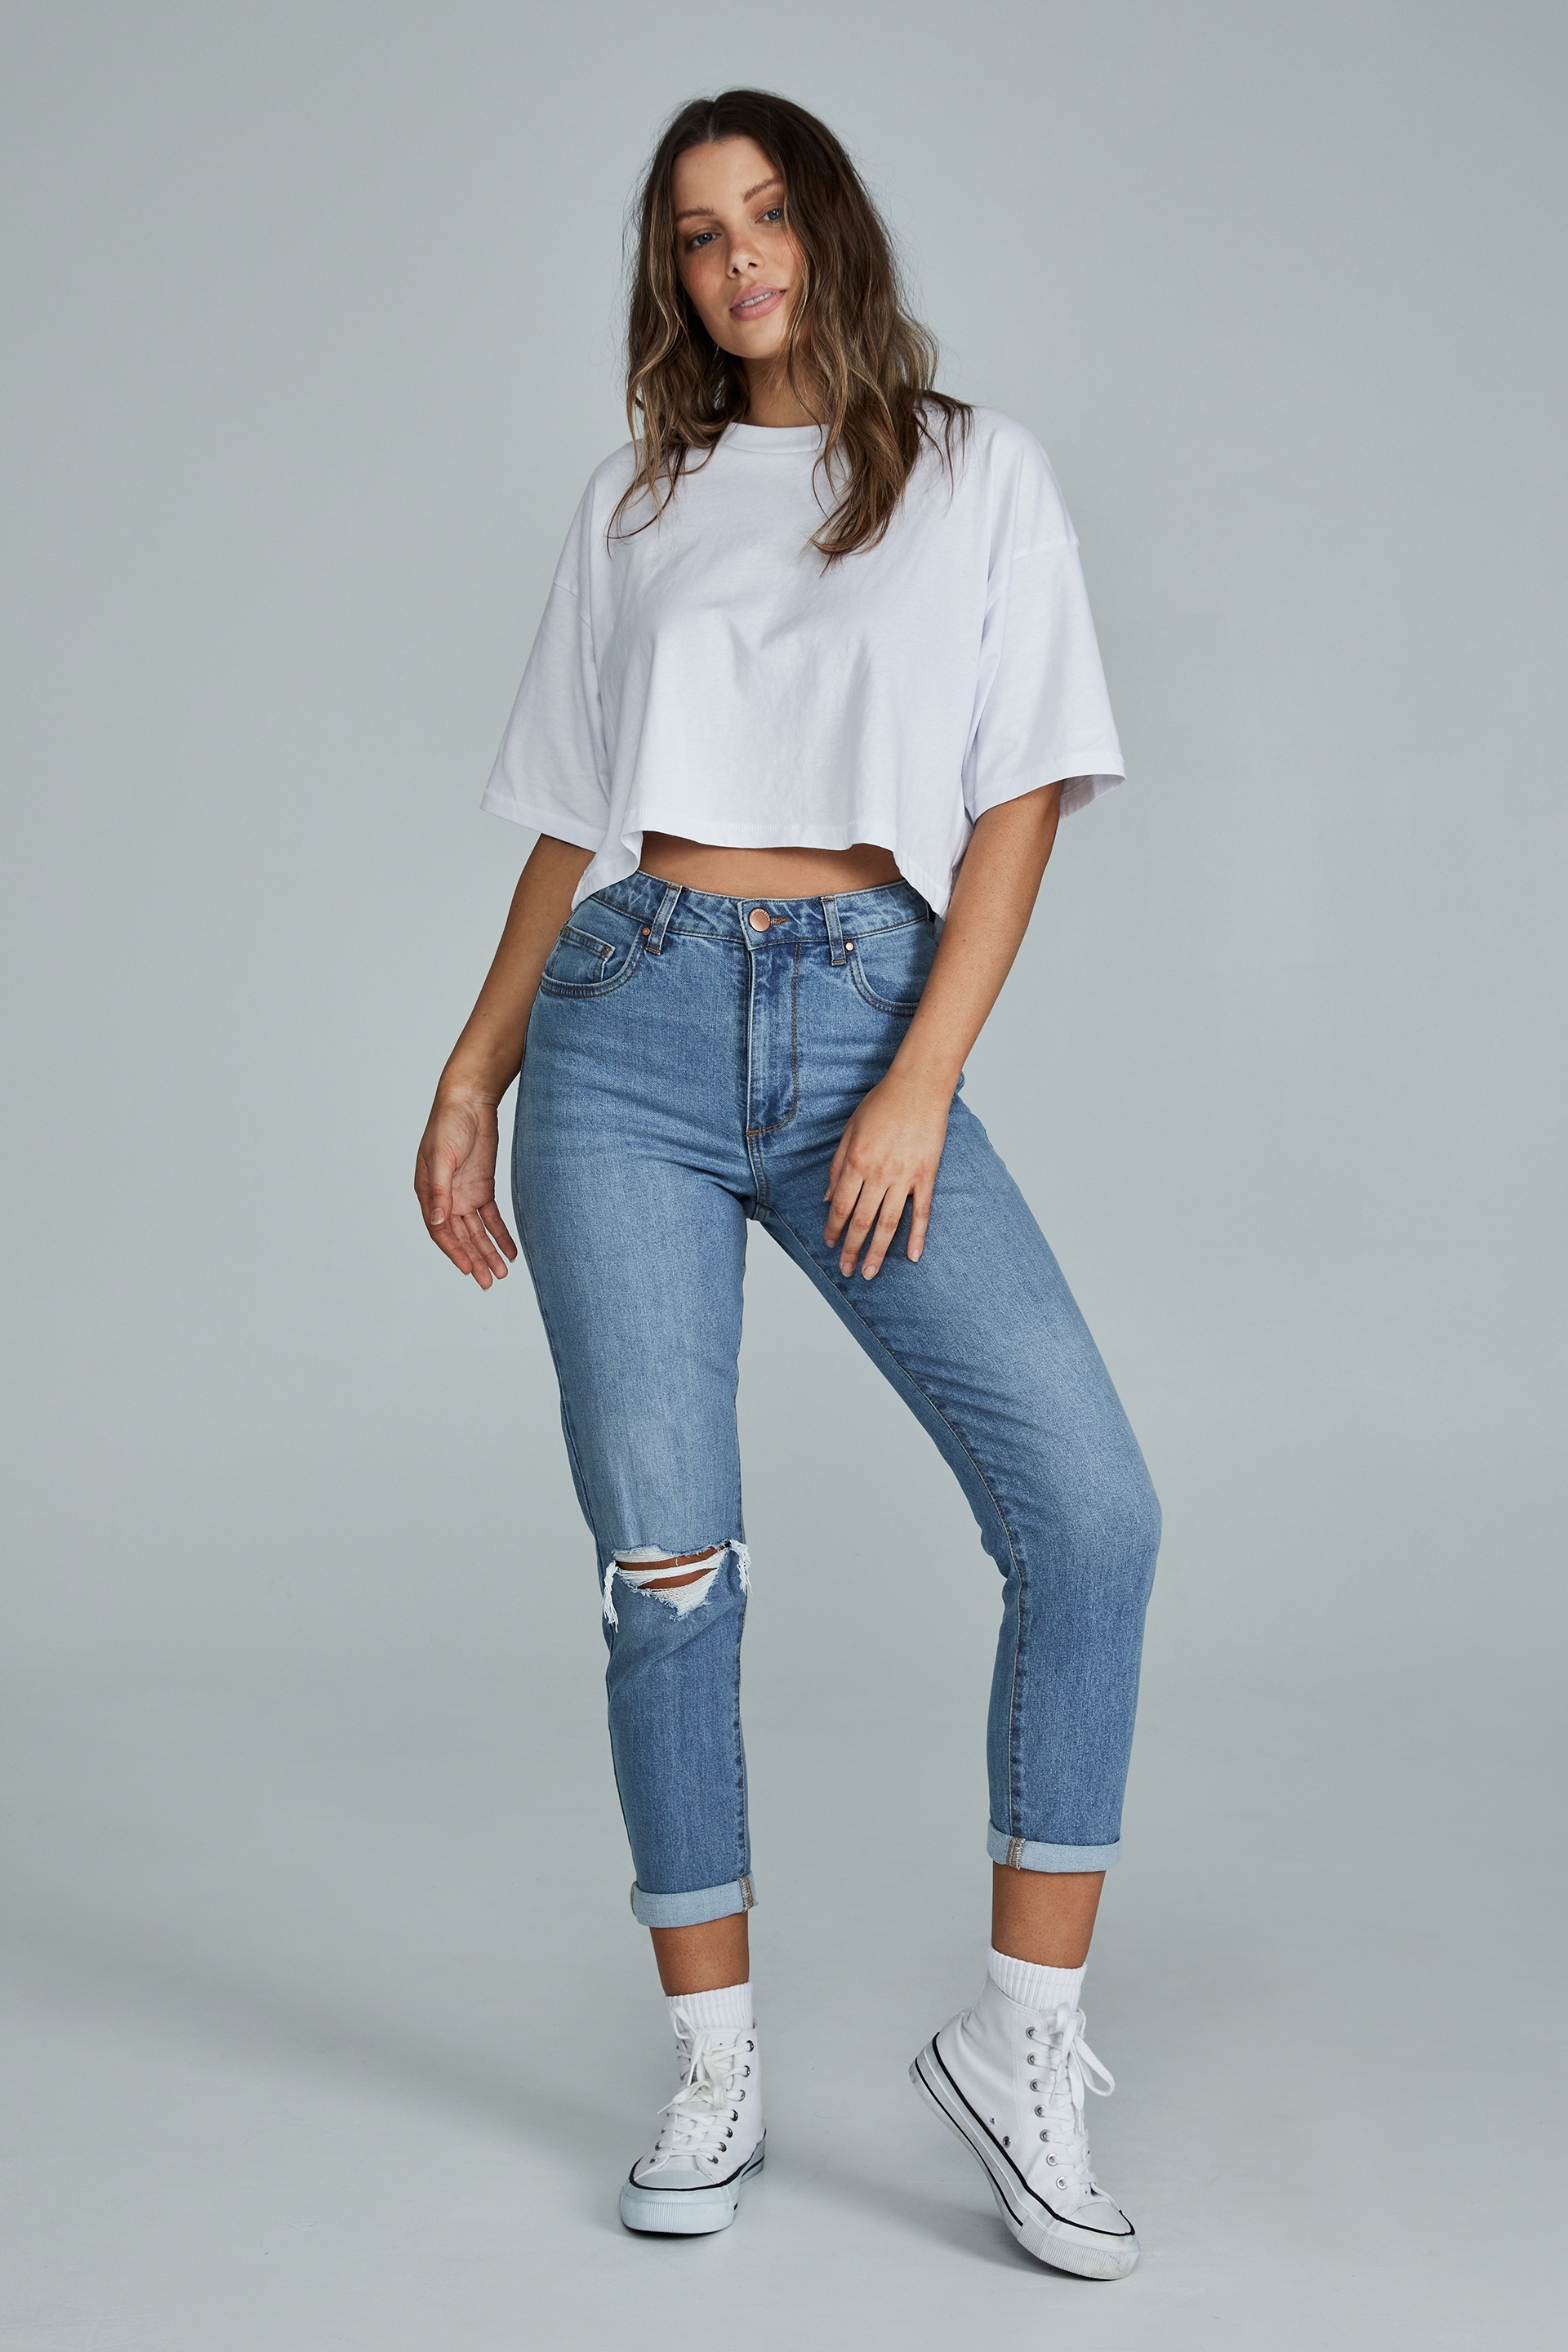 Zara jeans discount 77% KIDS FASHION Trousers Jean Blue 11Y 